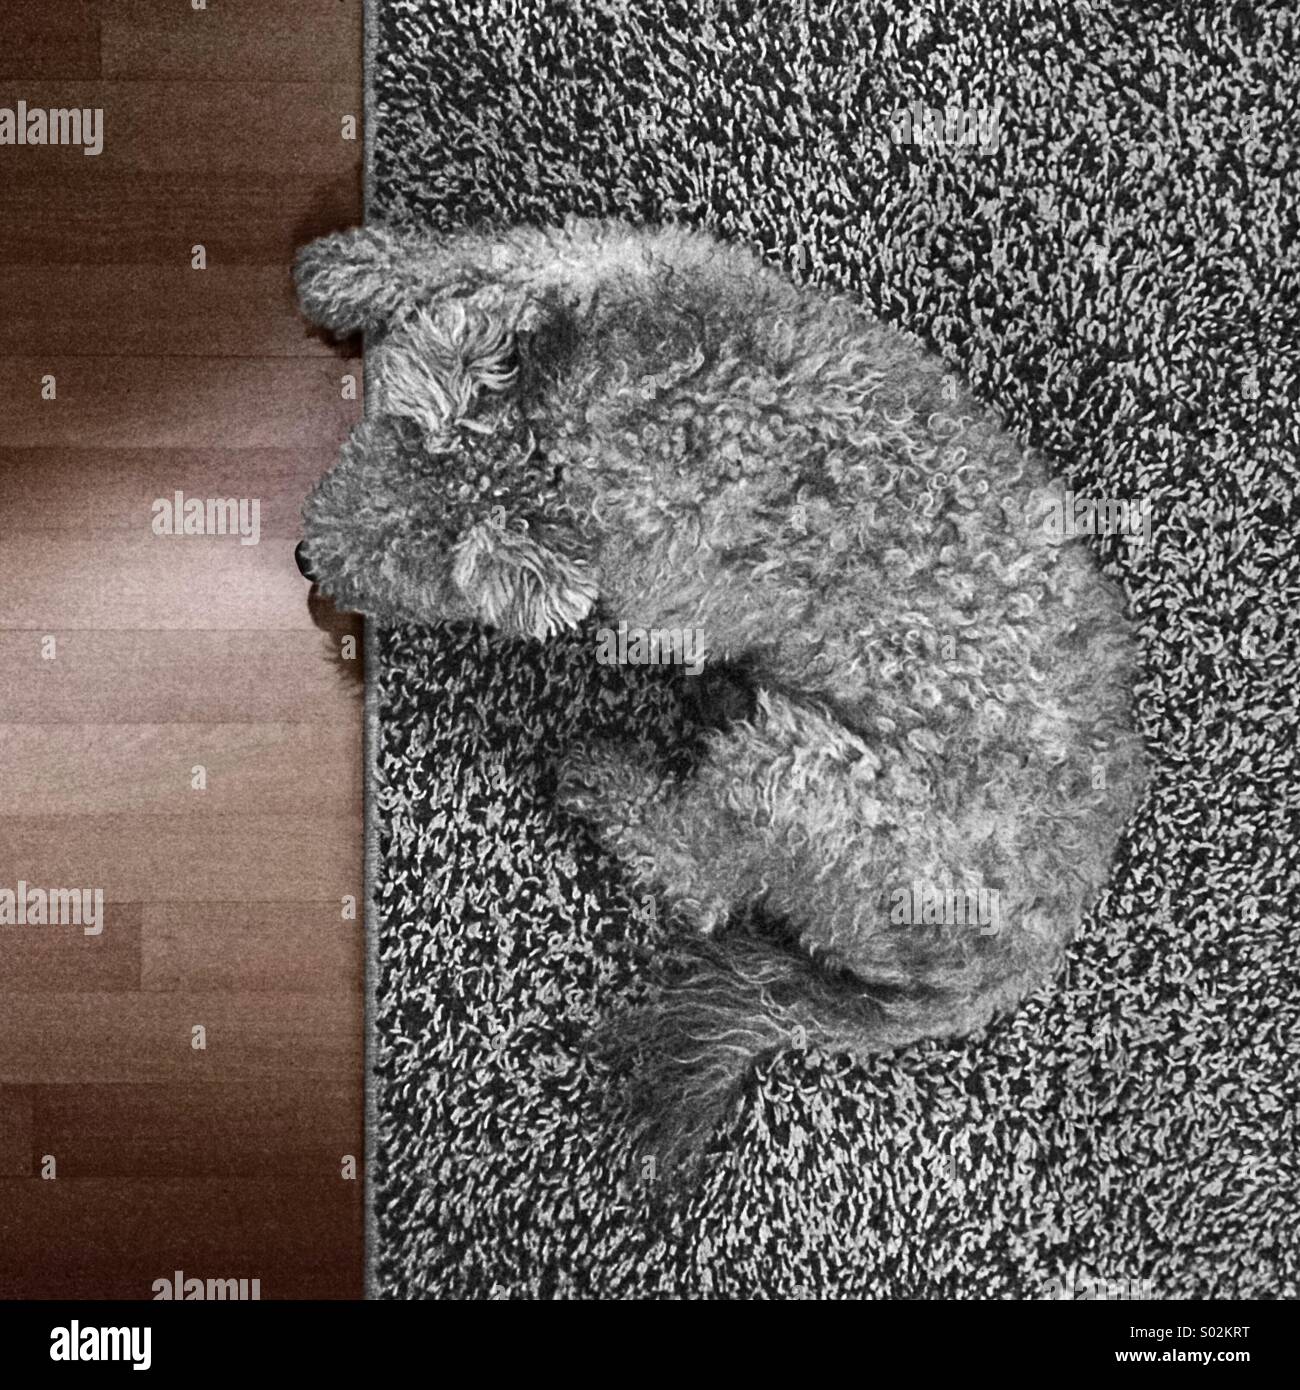 Ein grauer Hund auf einem grauen Teppich Stockfoto